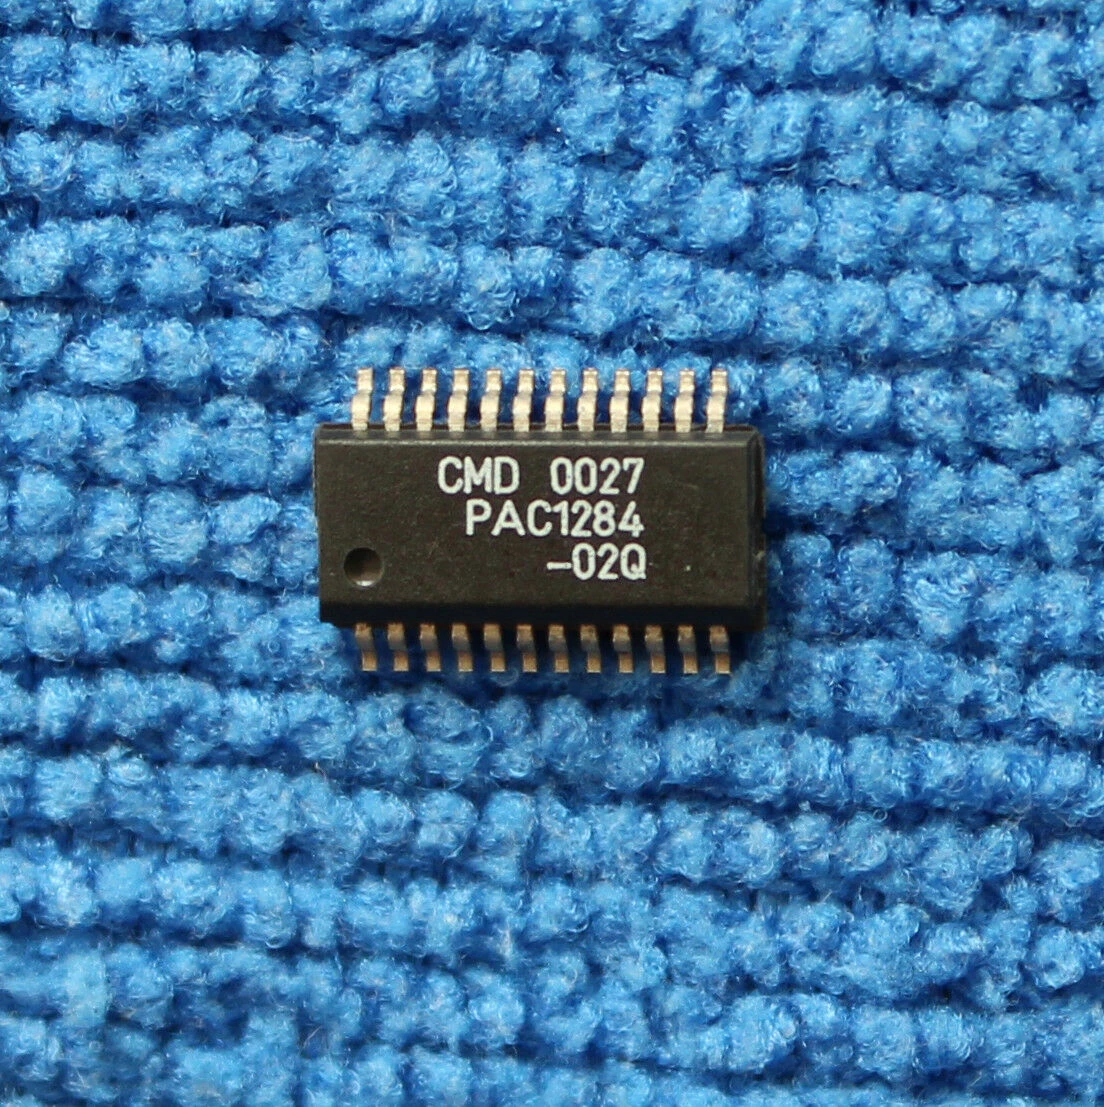 

1PCS NEW Original PAC1284-02Q PAC1284 SSOP24 SSOP IC In Stock